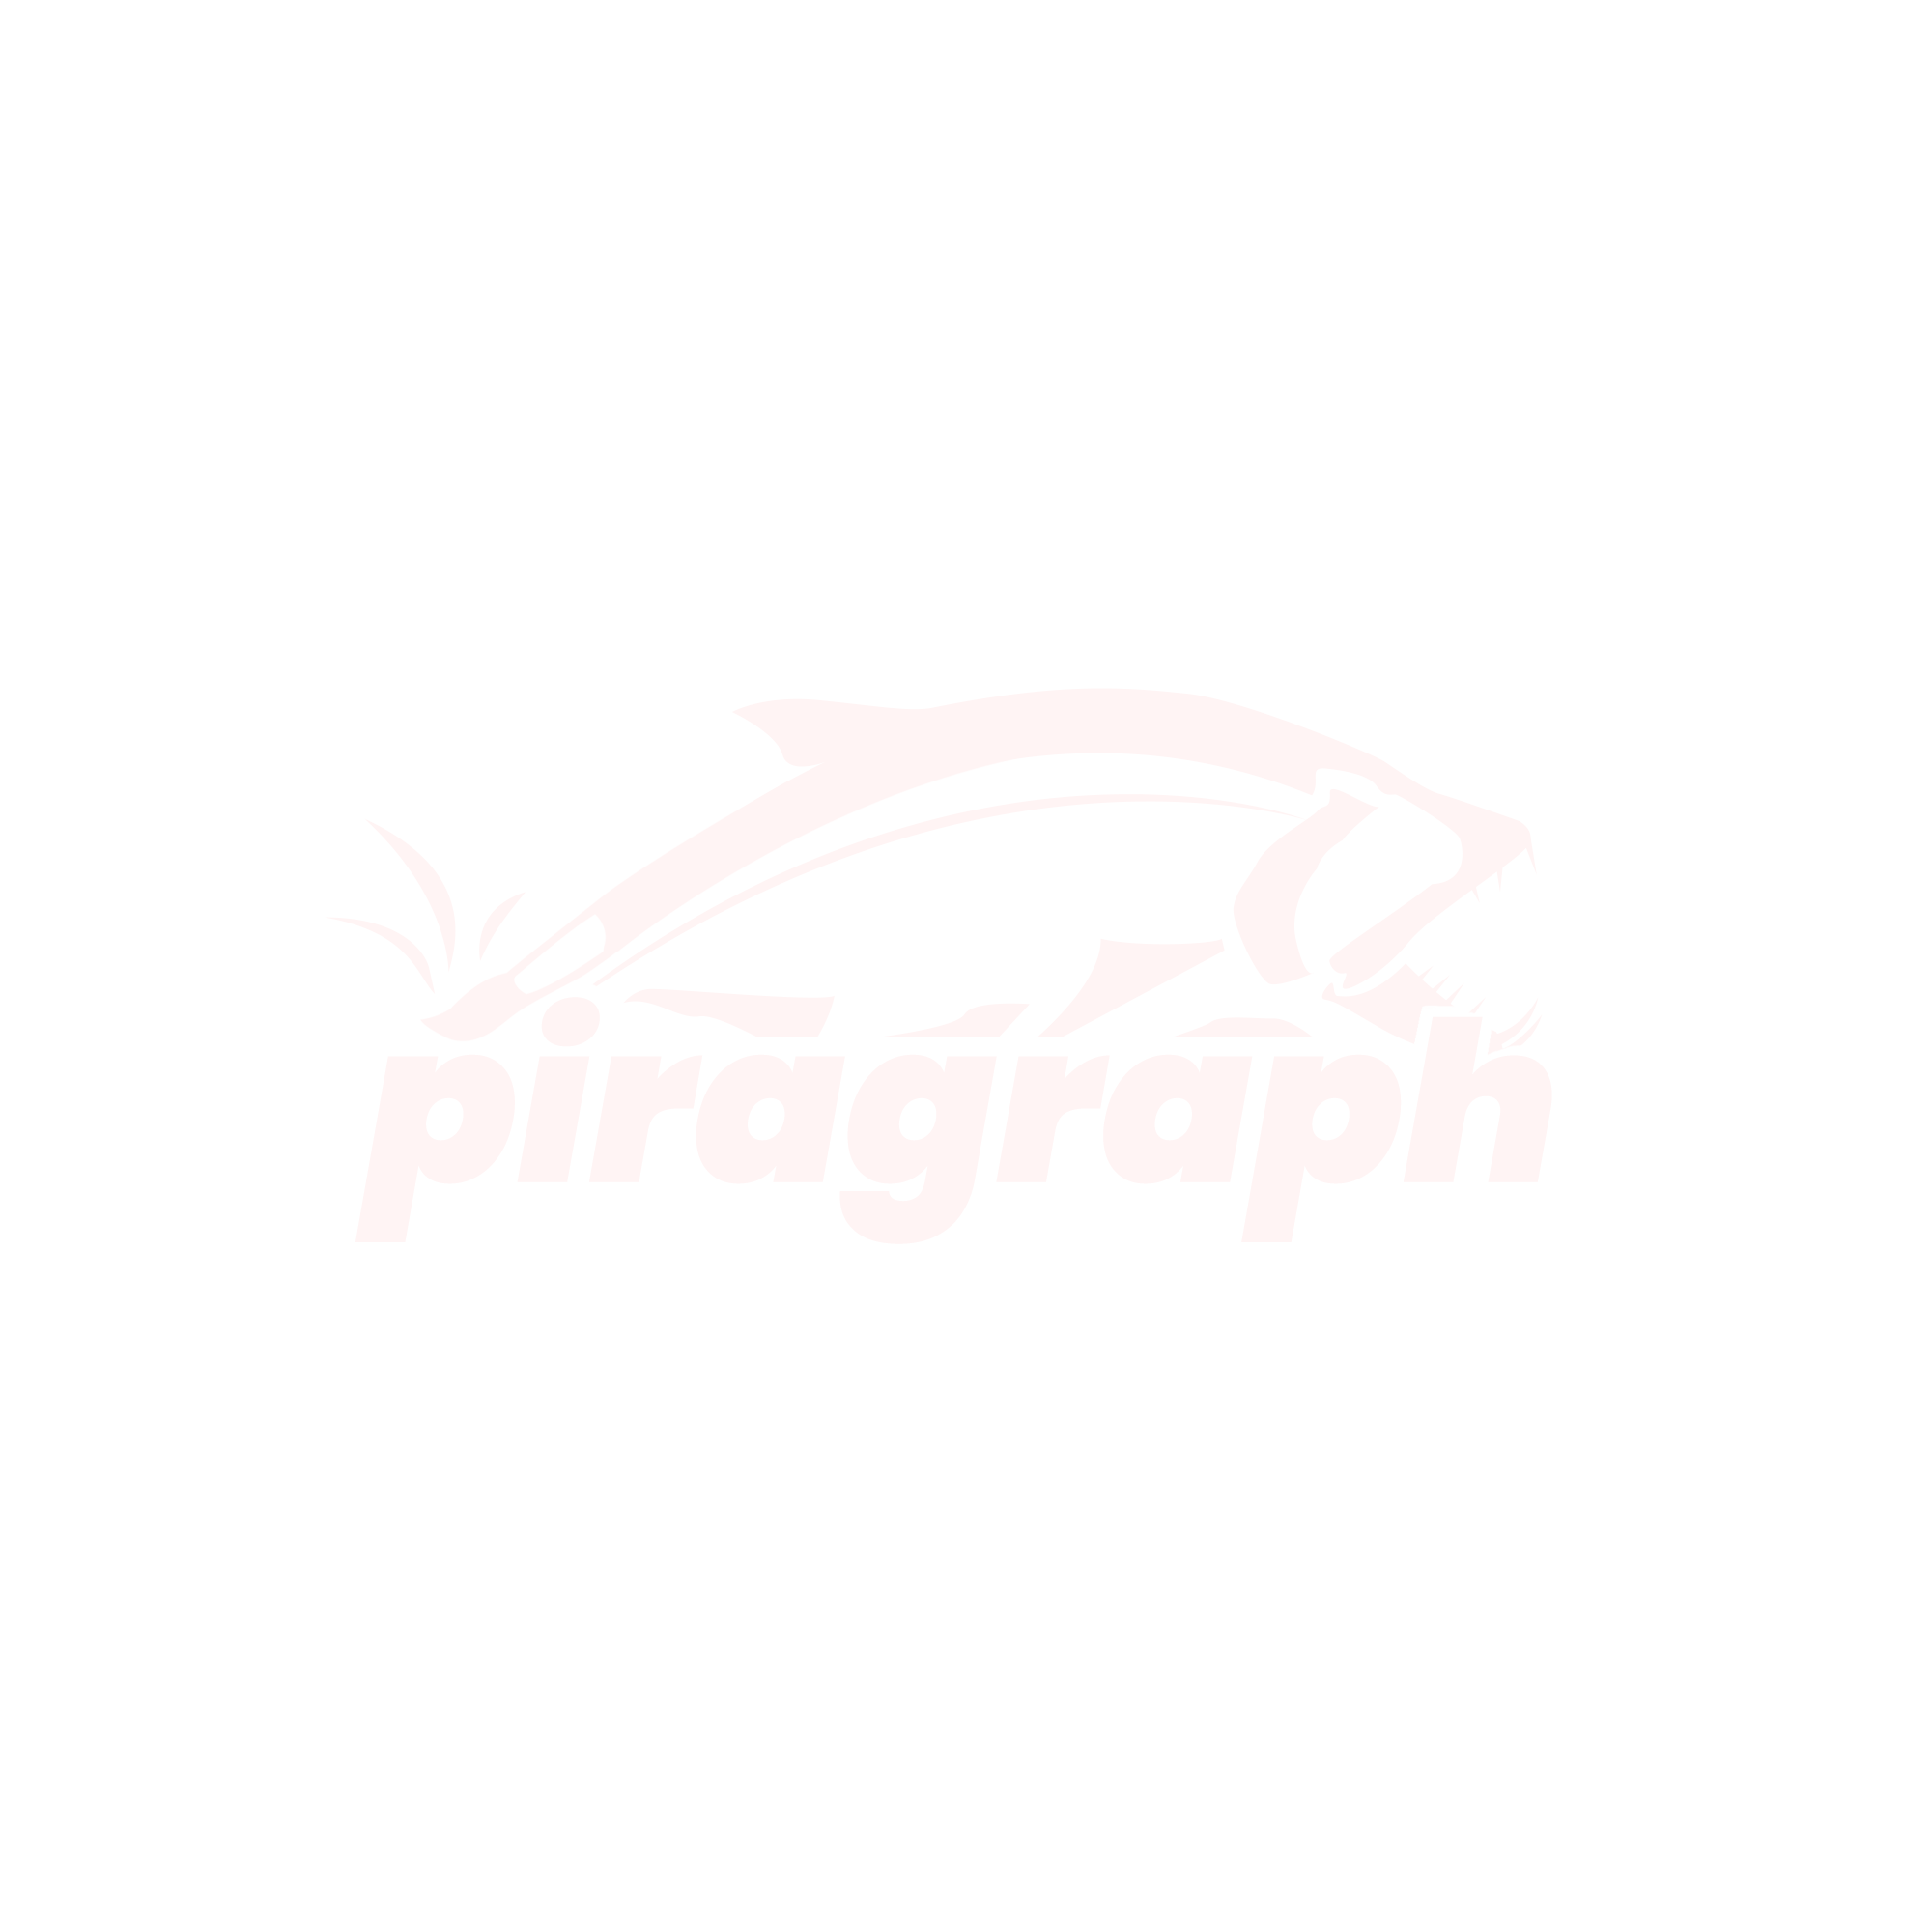 Piragraph